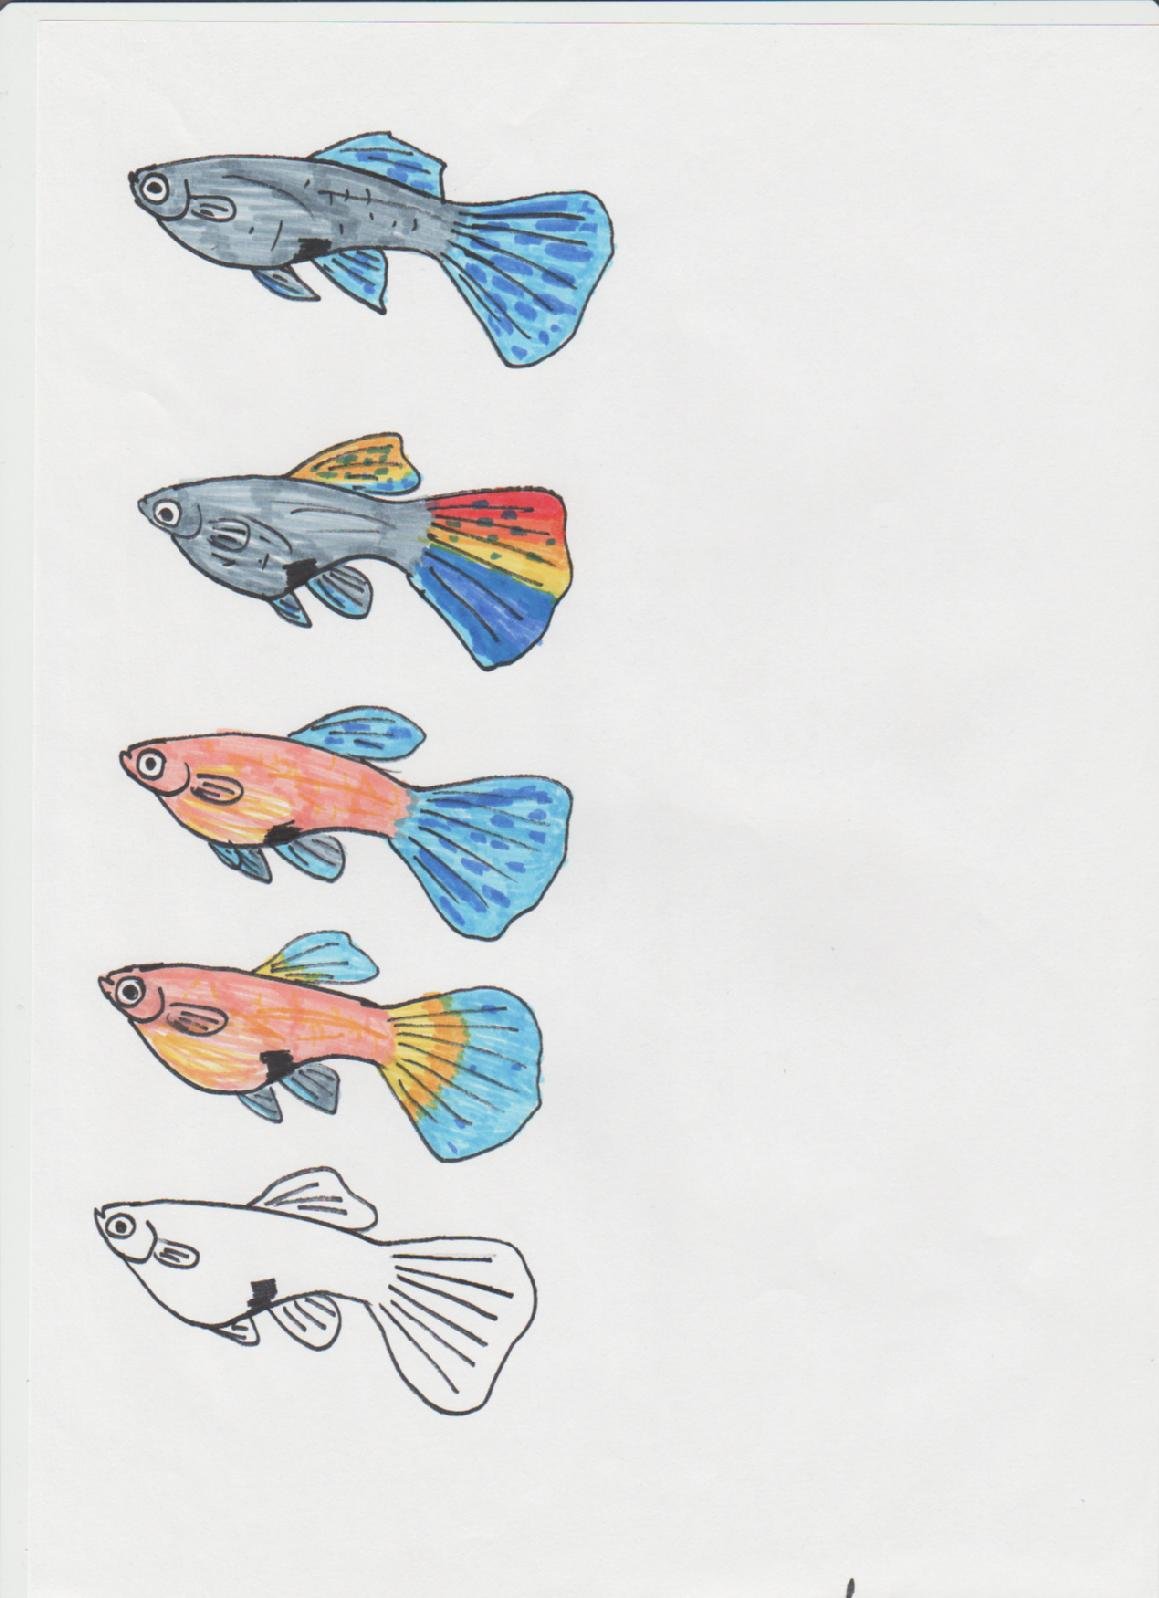 Нарисовать аквариумную рыбку гуппи